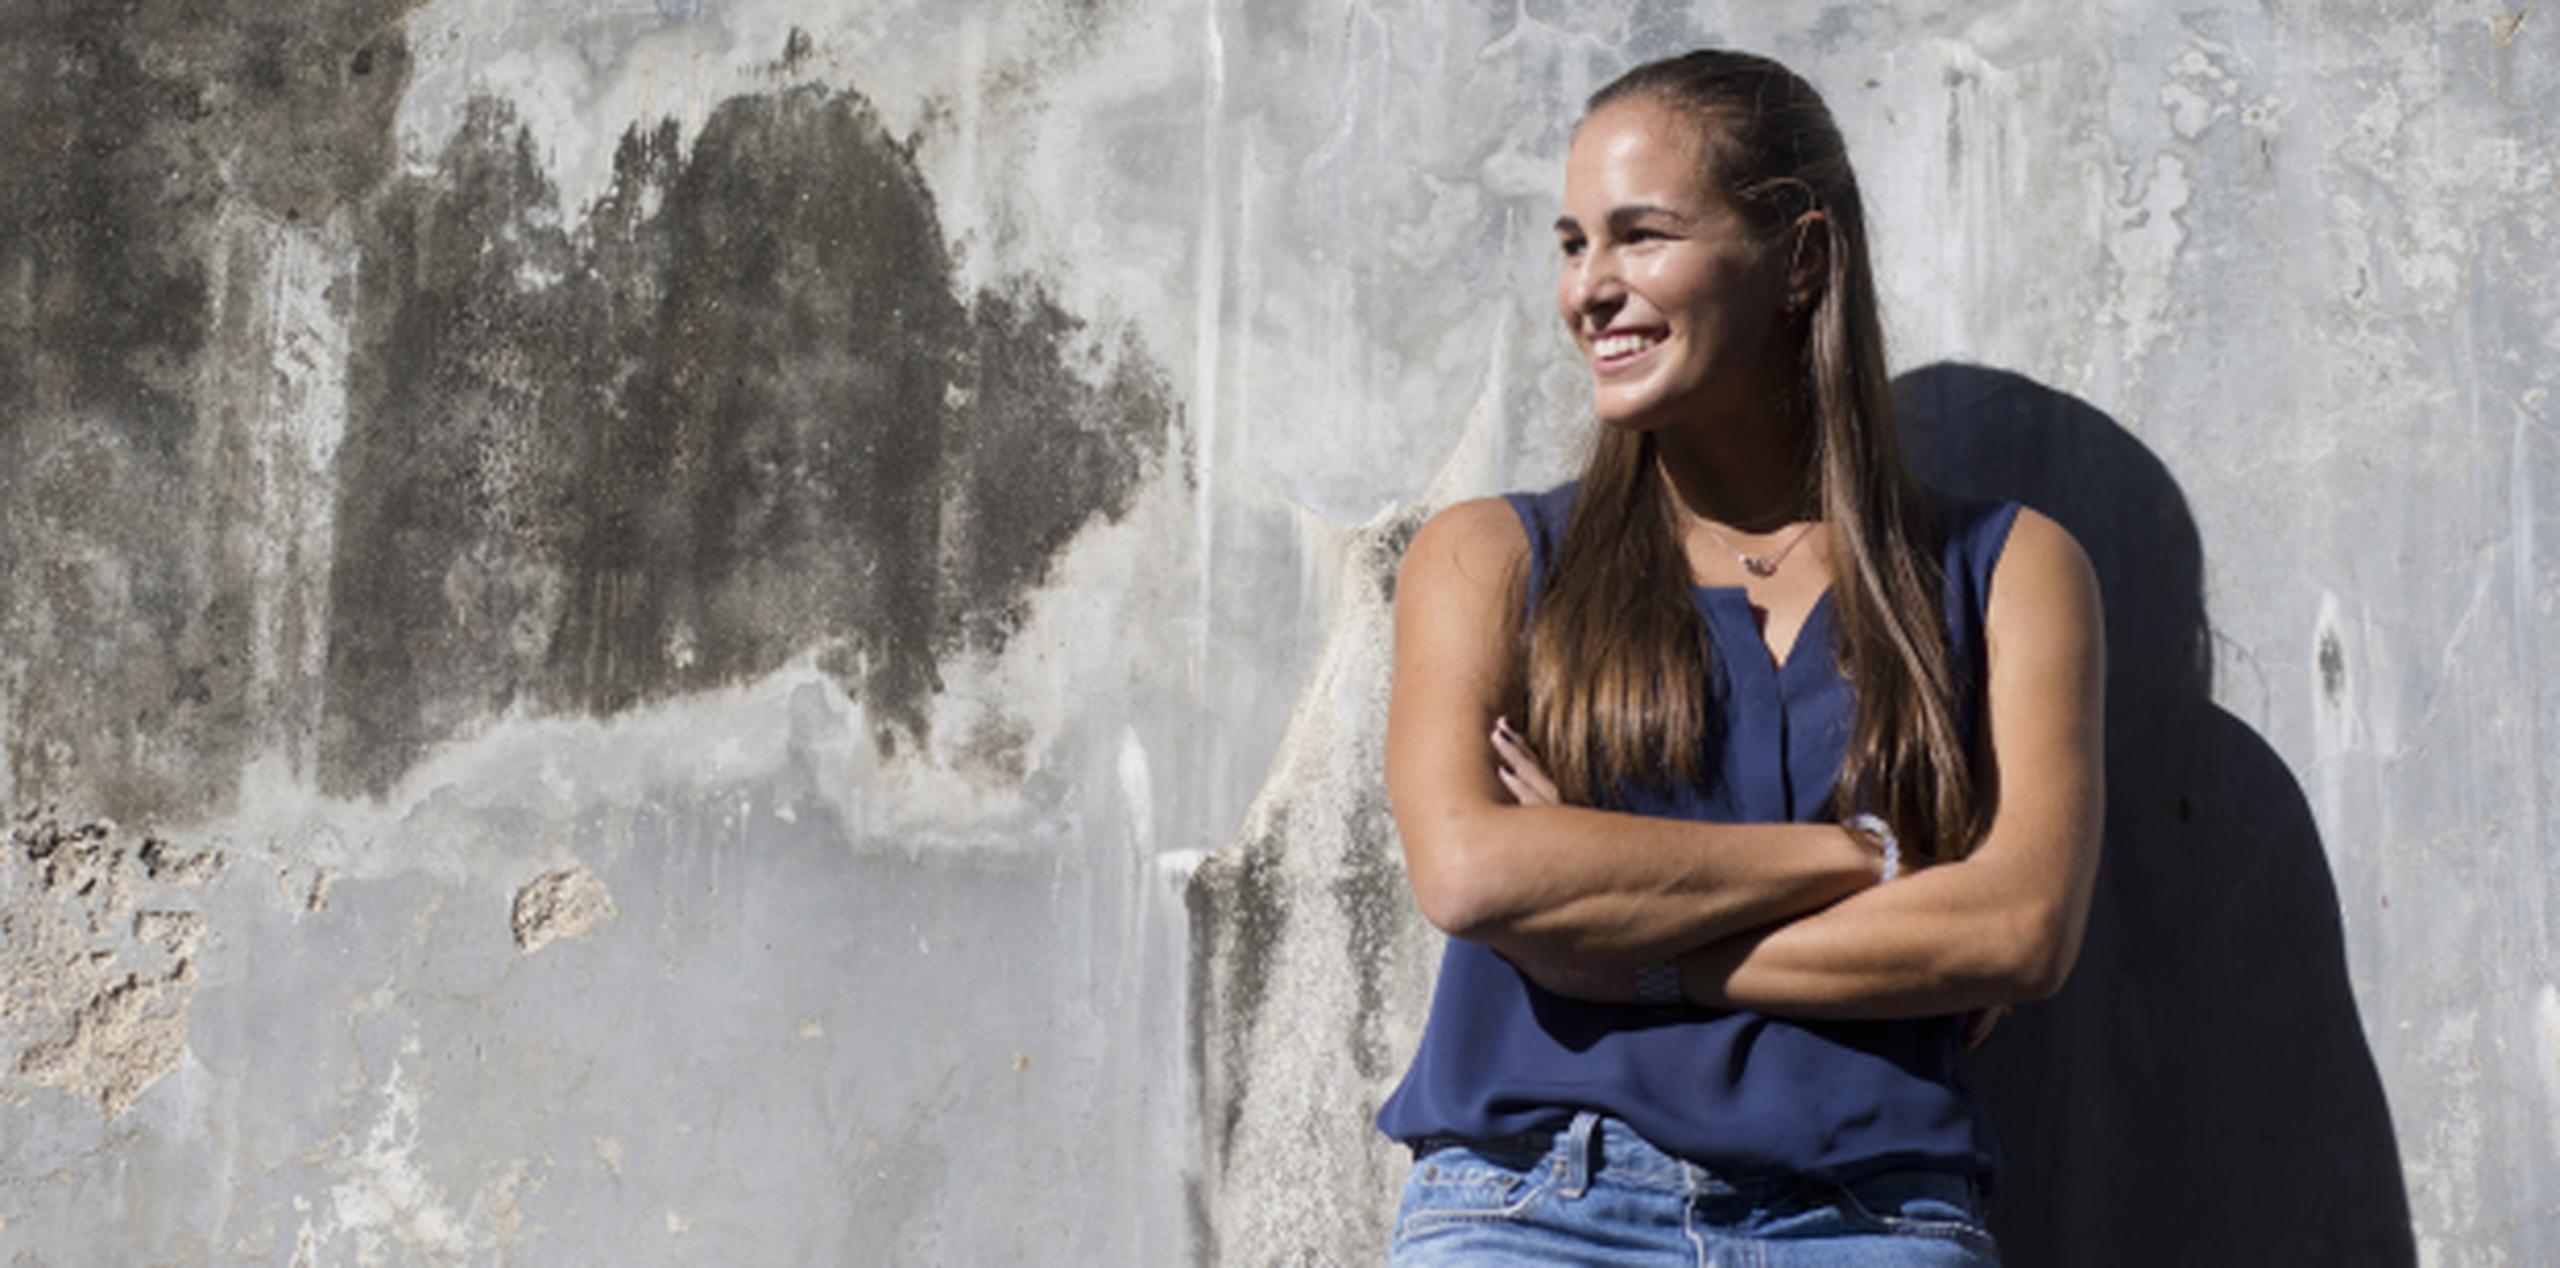 Mónica Puig ama el calor de la Isla. Por eso escogió comenzar su preparación para el 2016 en la tierra de sus amores. (teresa.canino@gfrmedia.com)